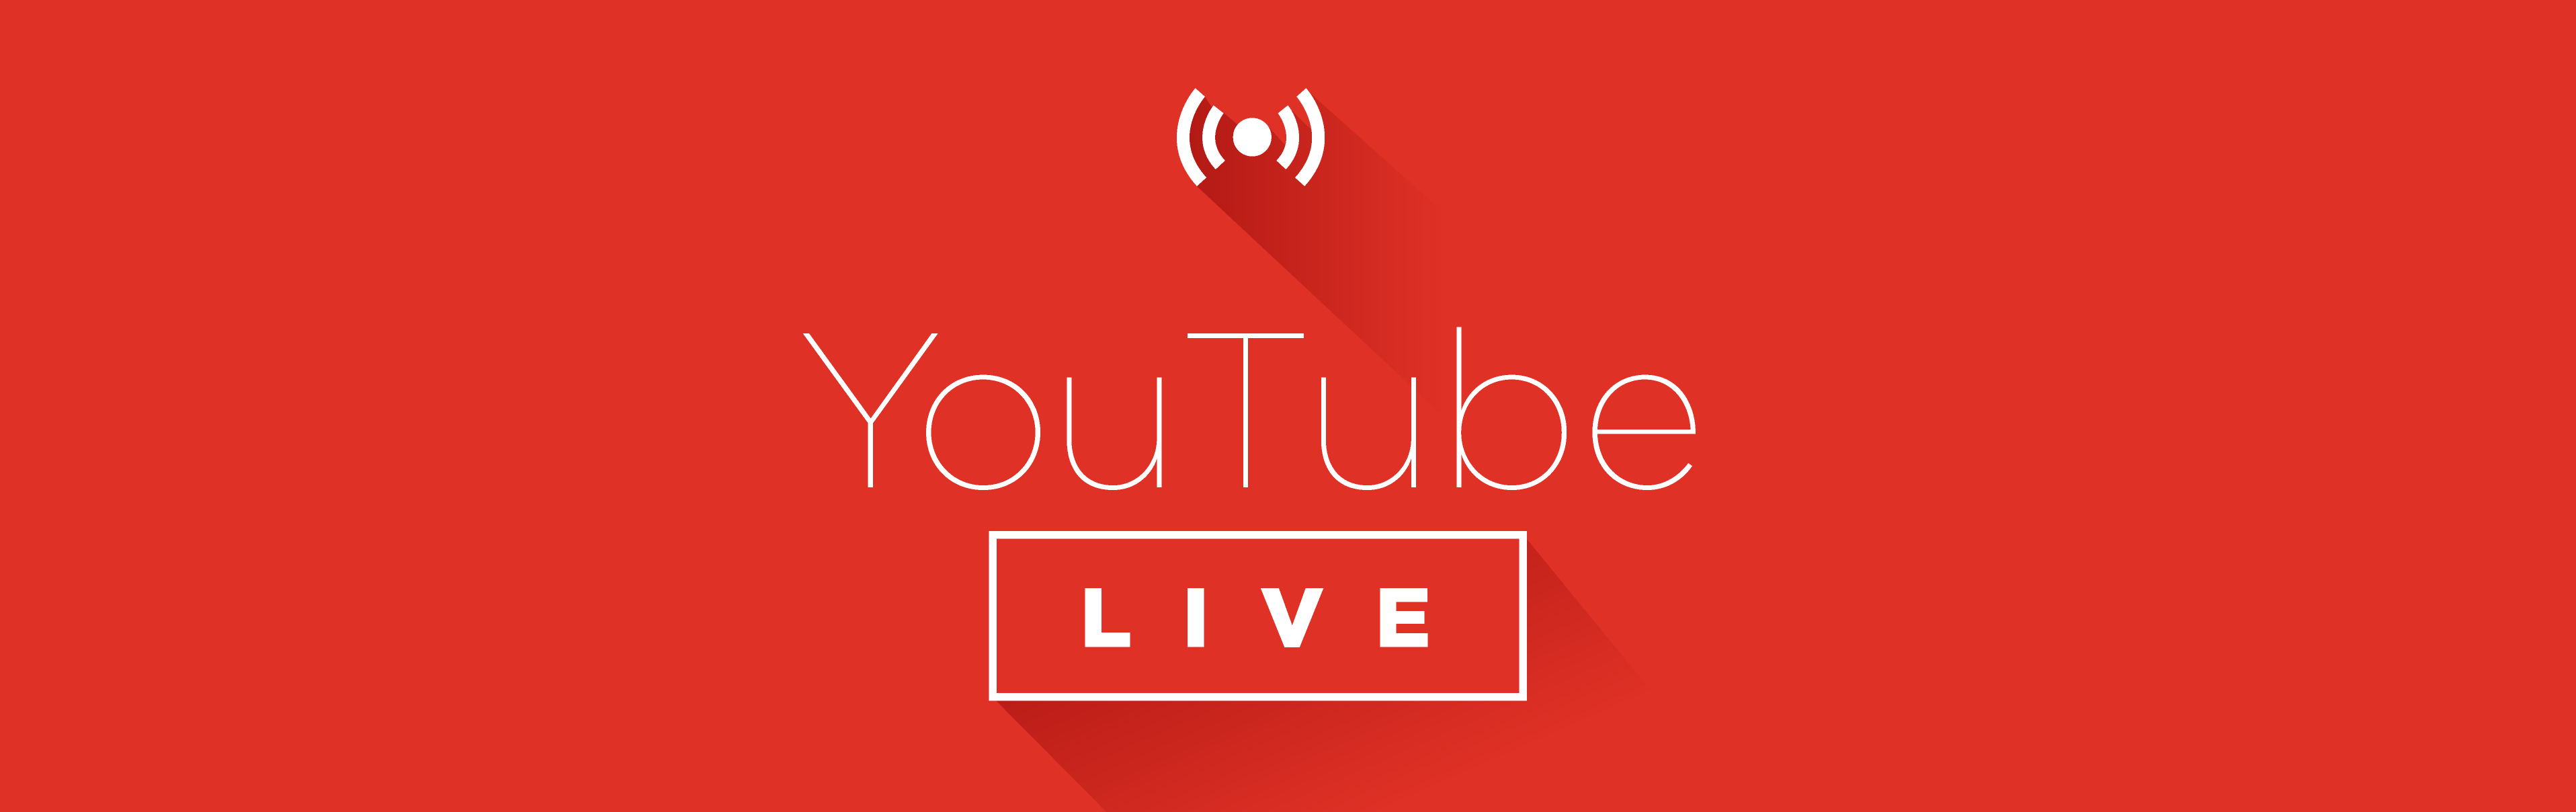 YouTube je najavio set novih dodataka koji su sada dostupni korisnicima koji livestream-uju.